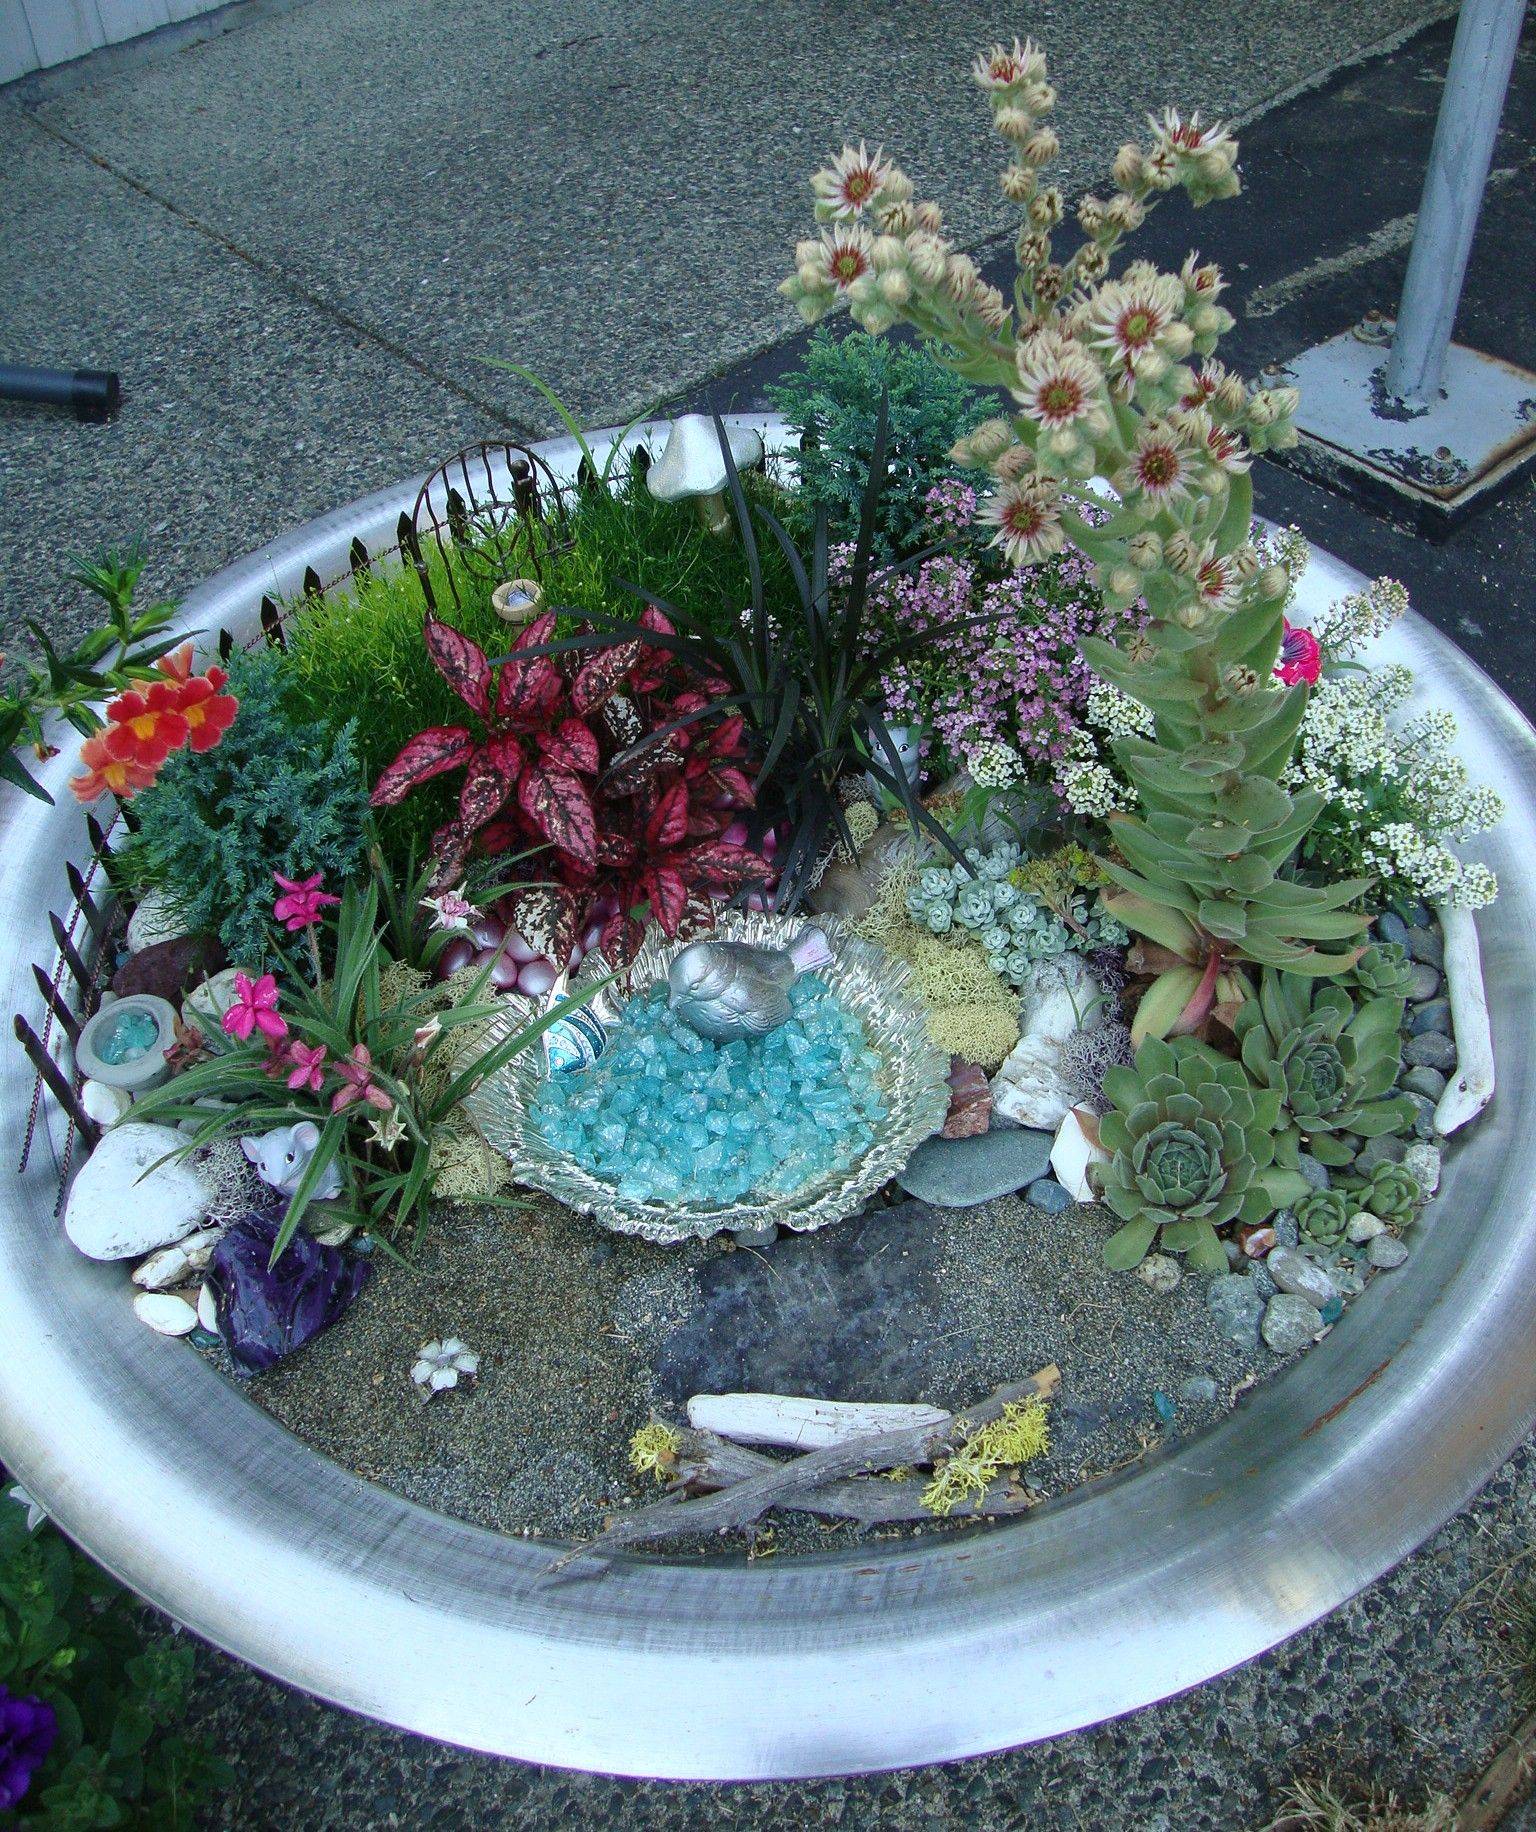 Fairy Garden Pots